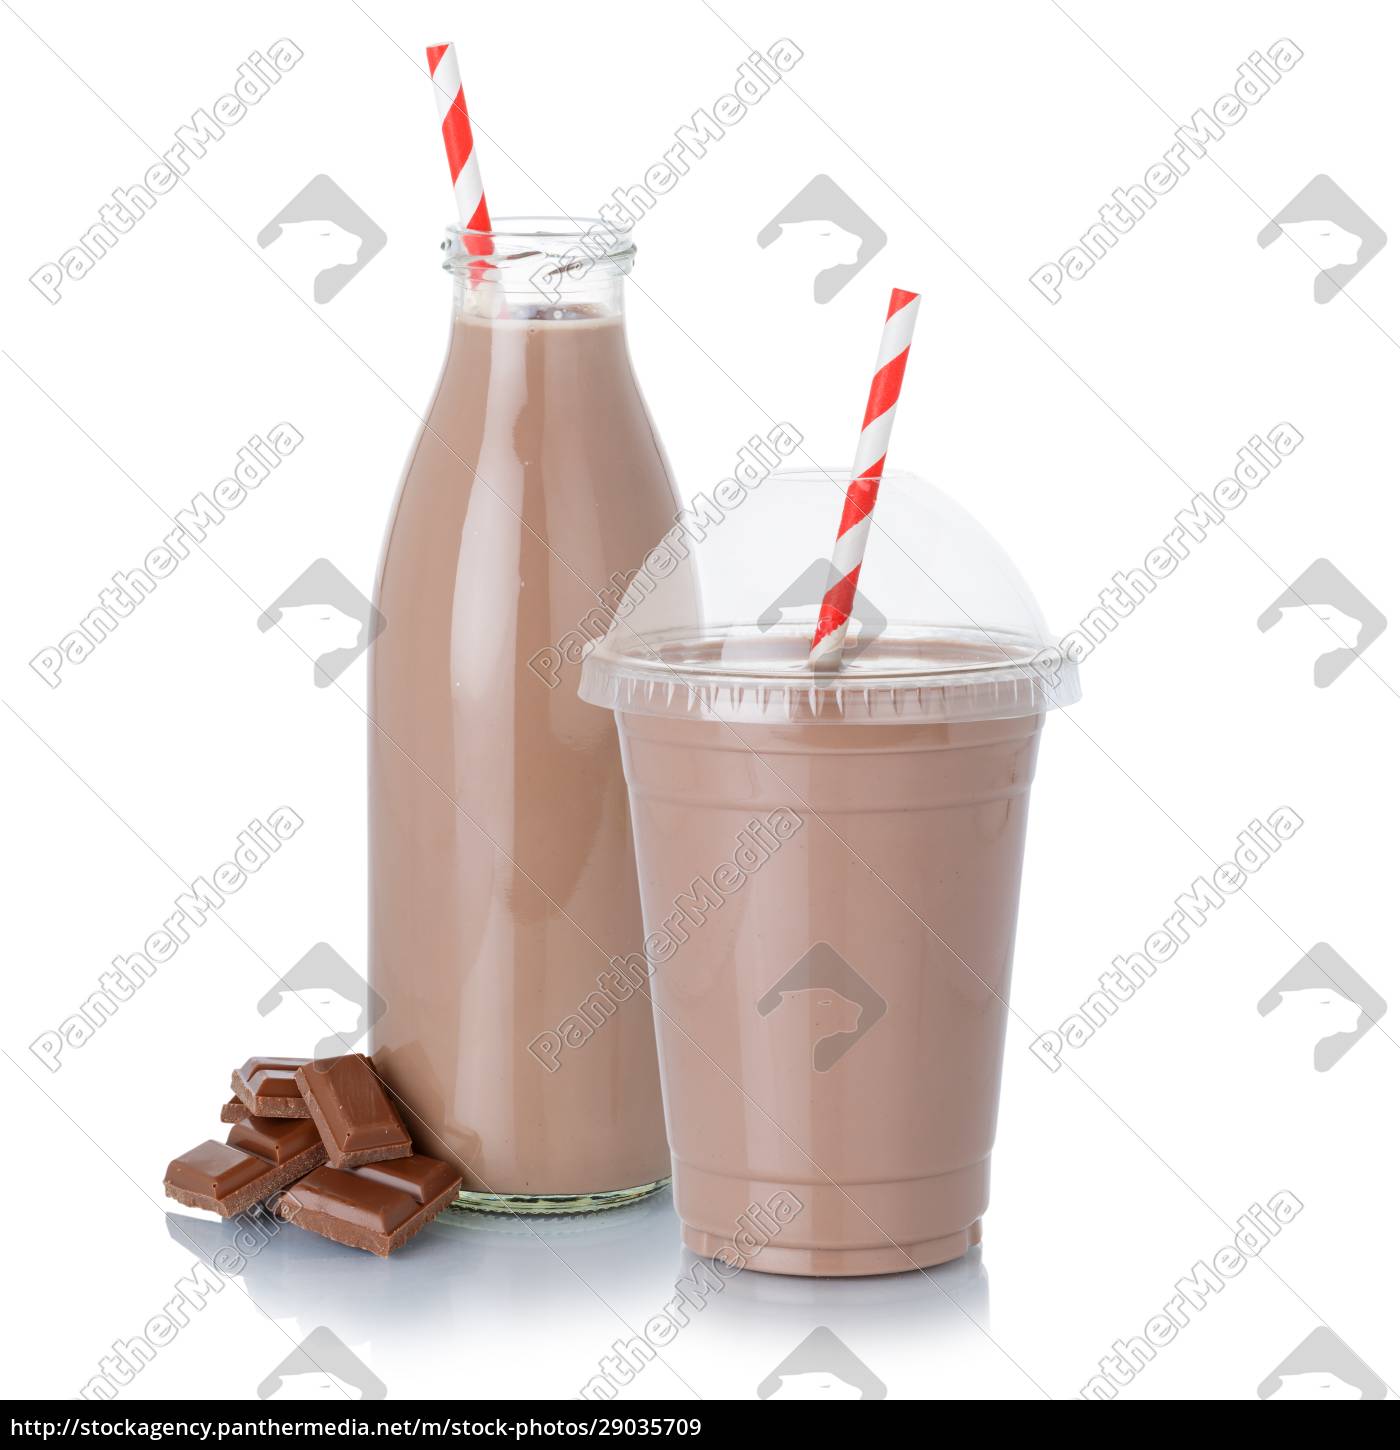 Choco milk shake